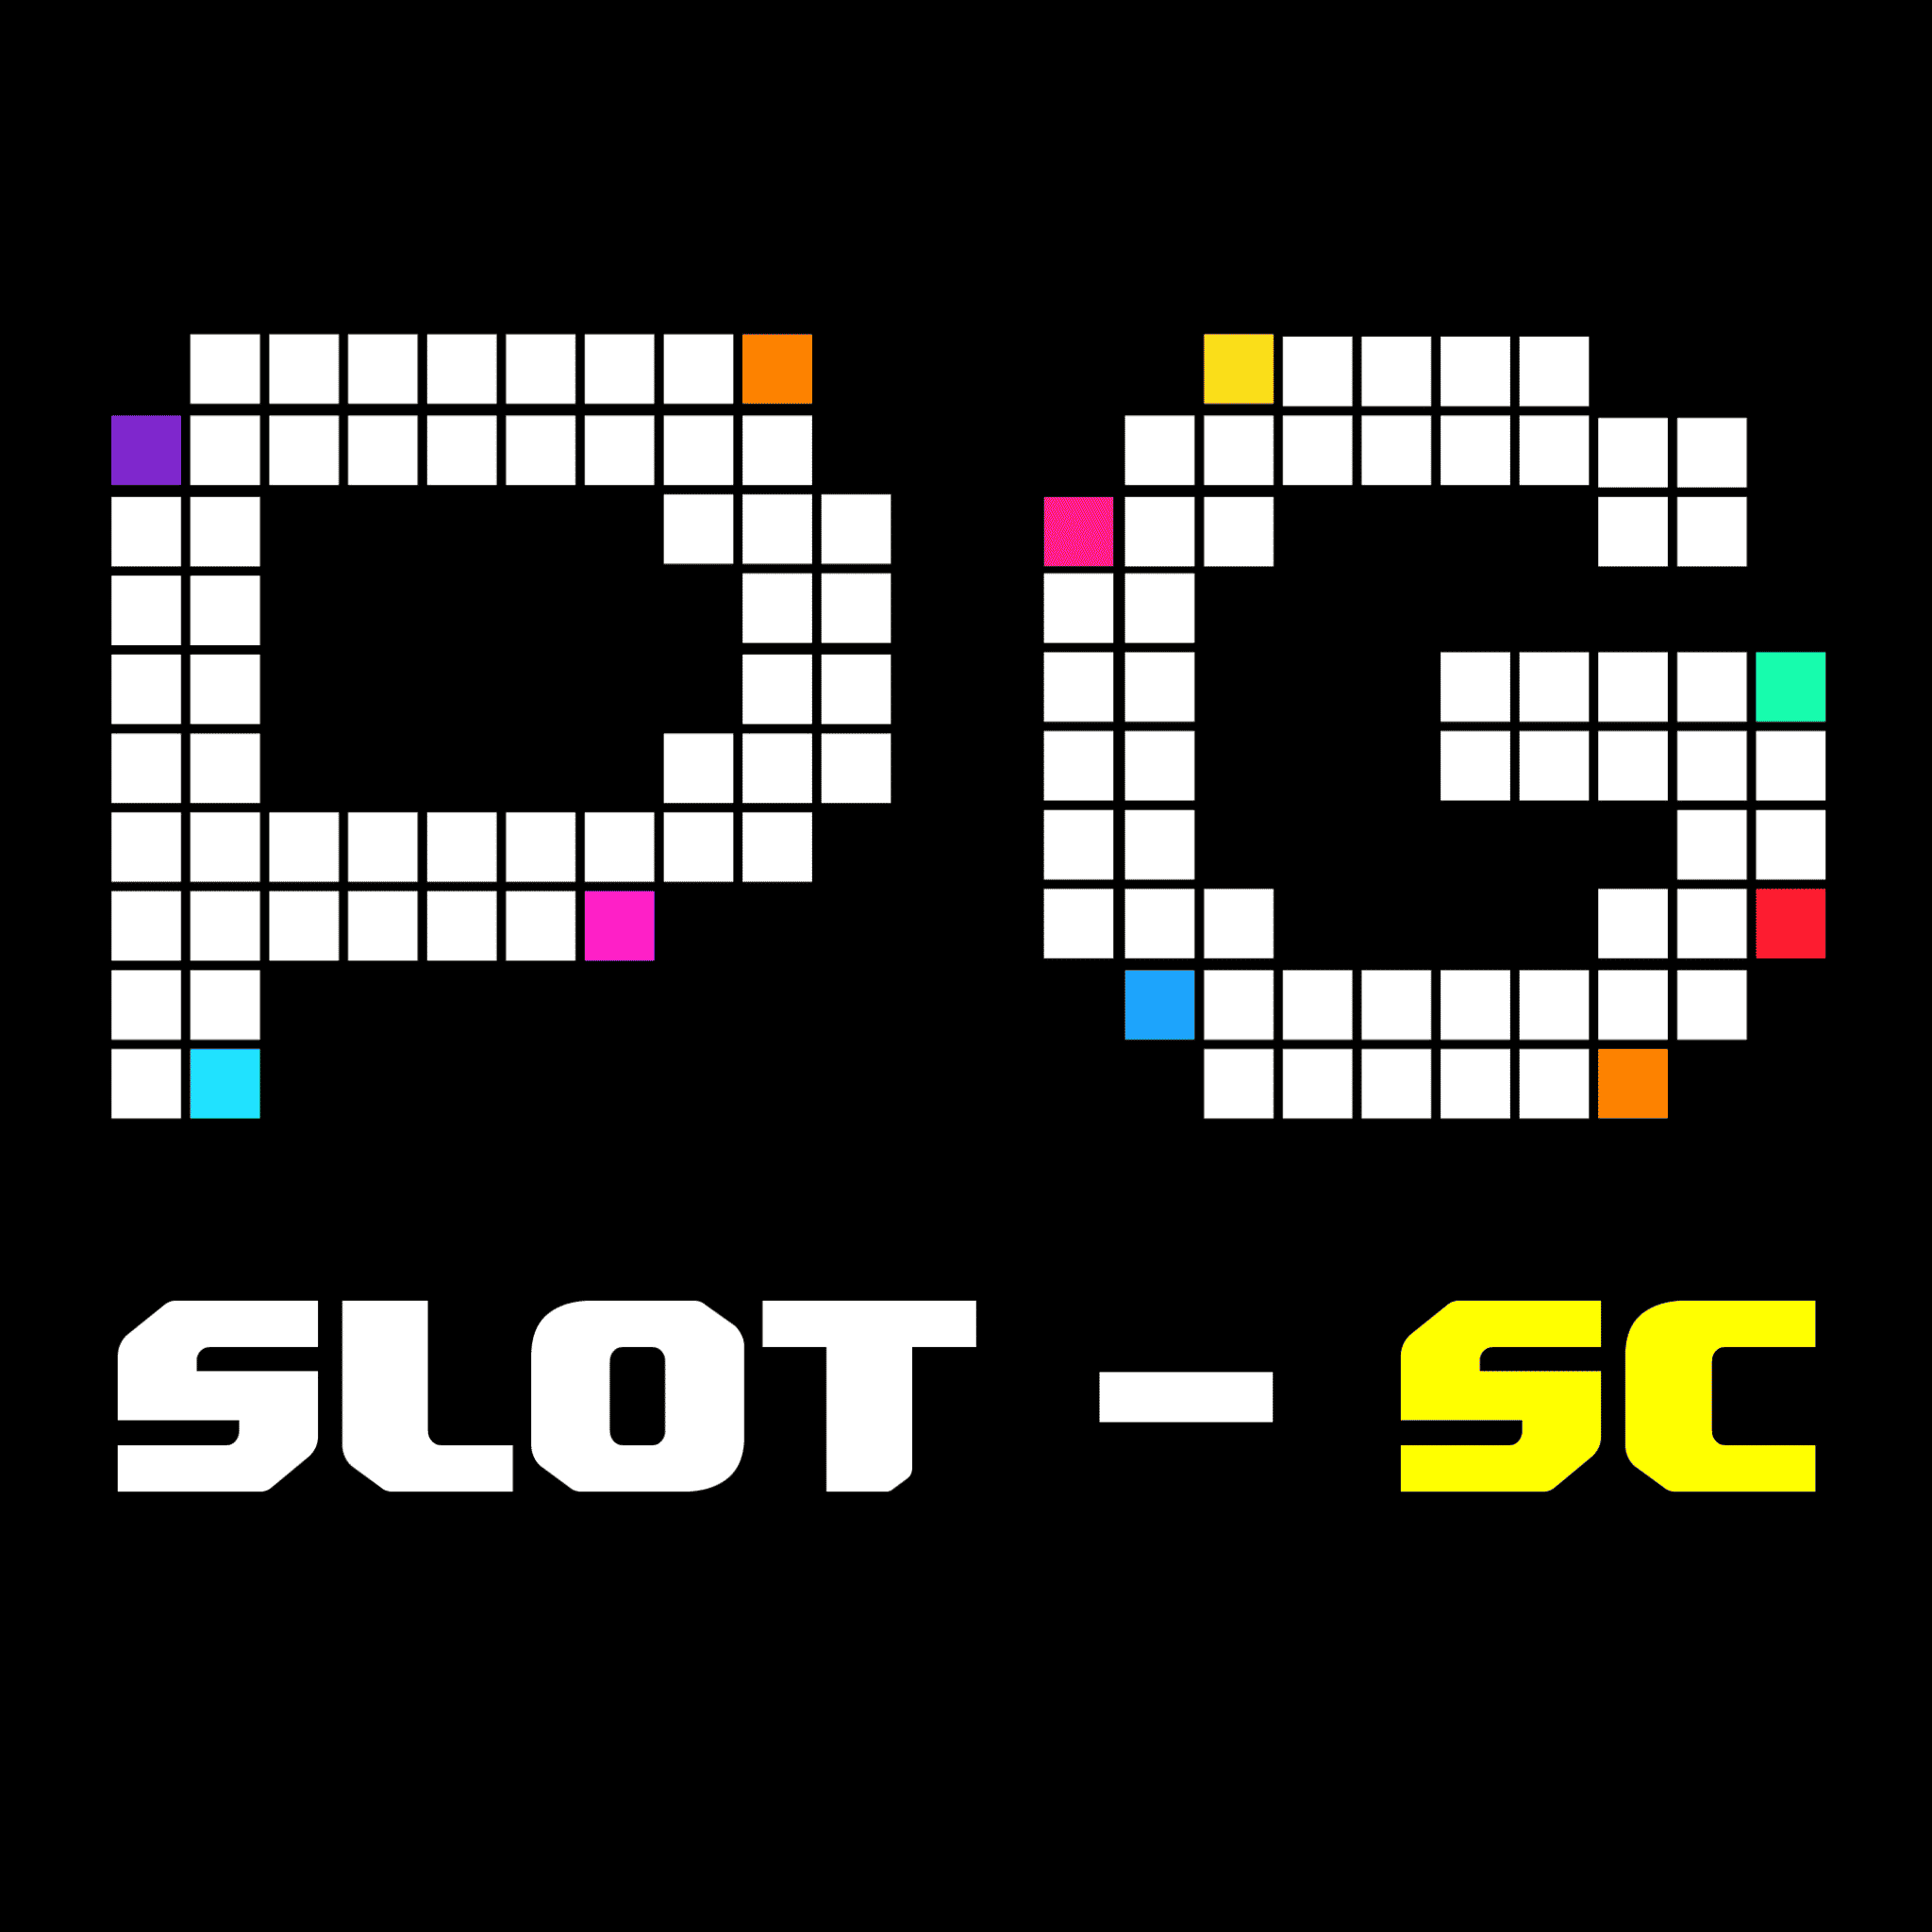 PG-SLOTSC เว็บเกมสล็อตออนไลน์ยอดนิยม จากเกมค่ายใหญ่